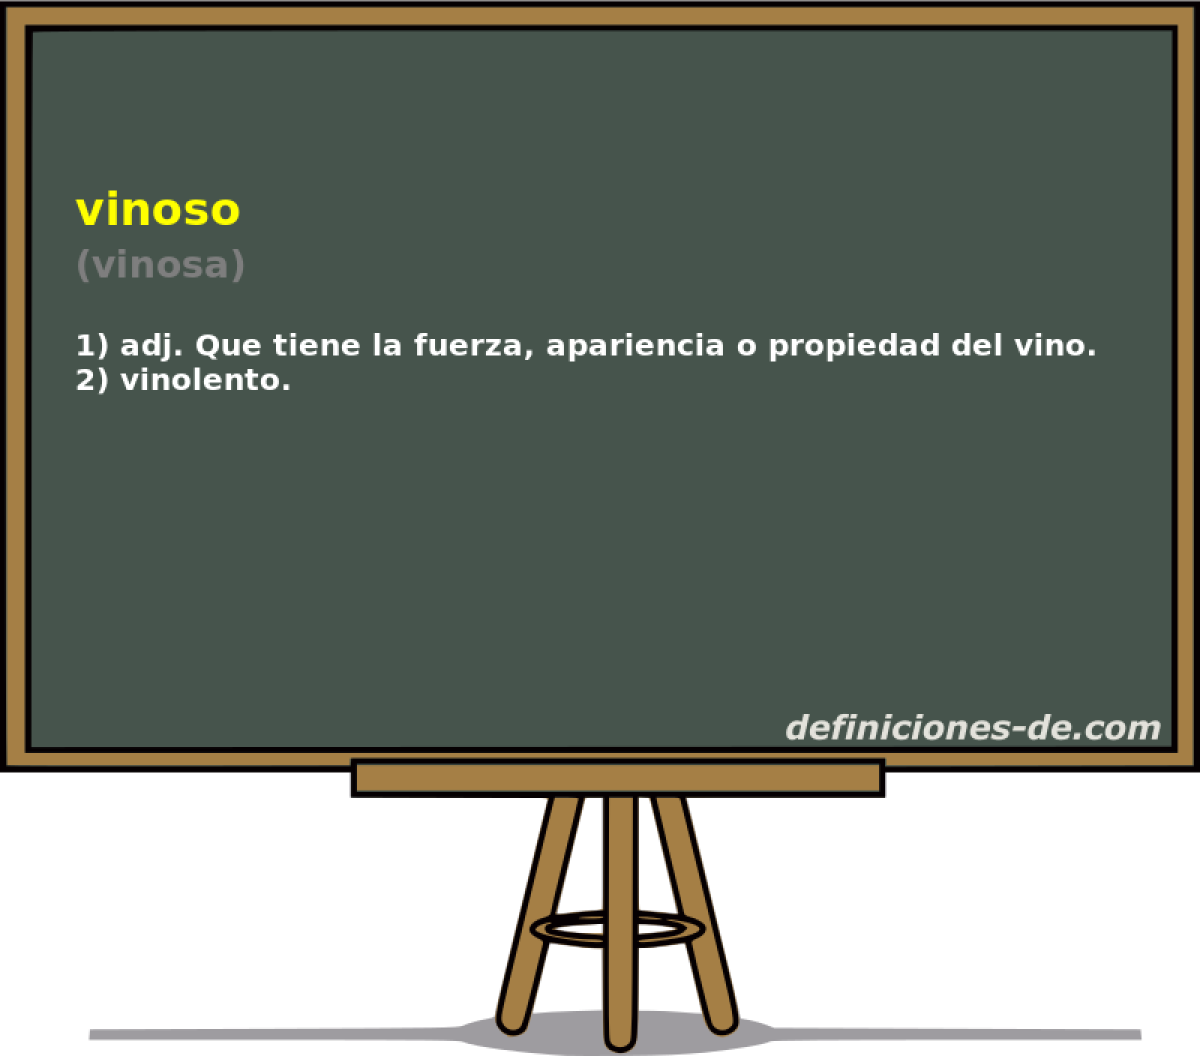 vinoso (vinosa)